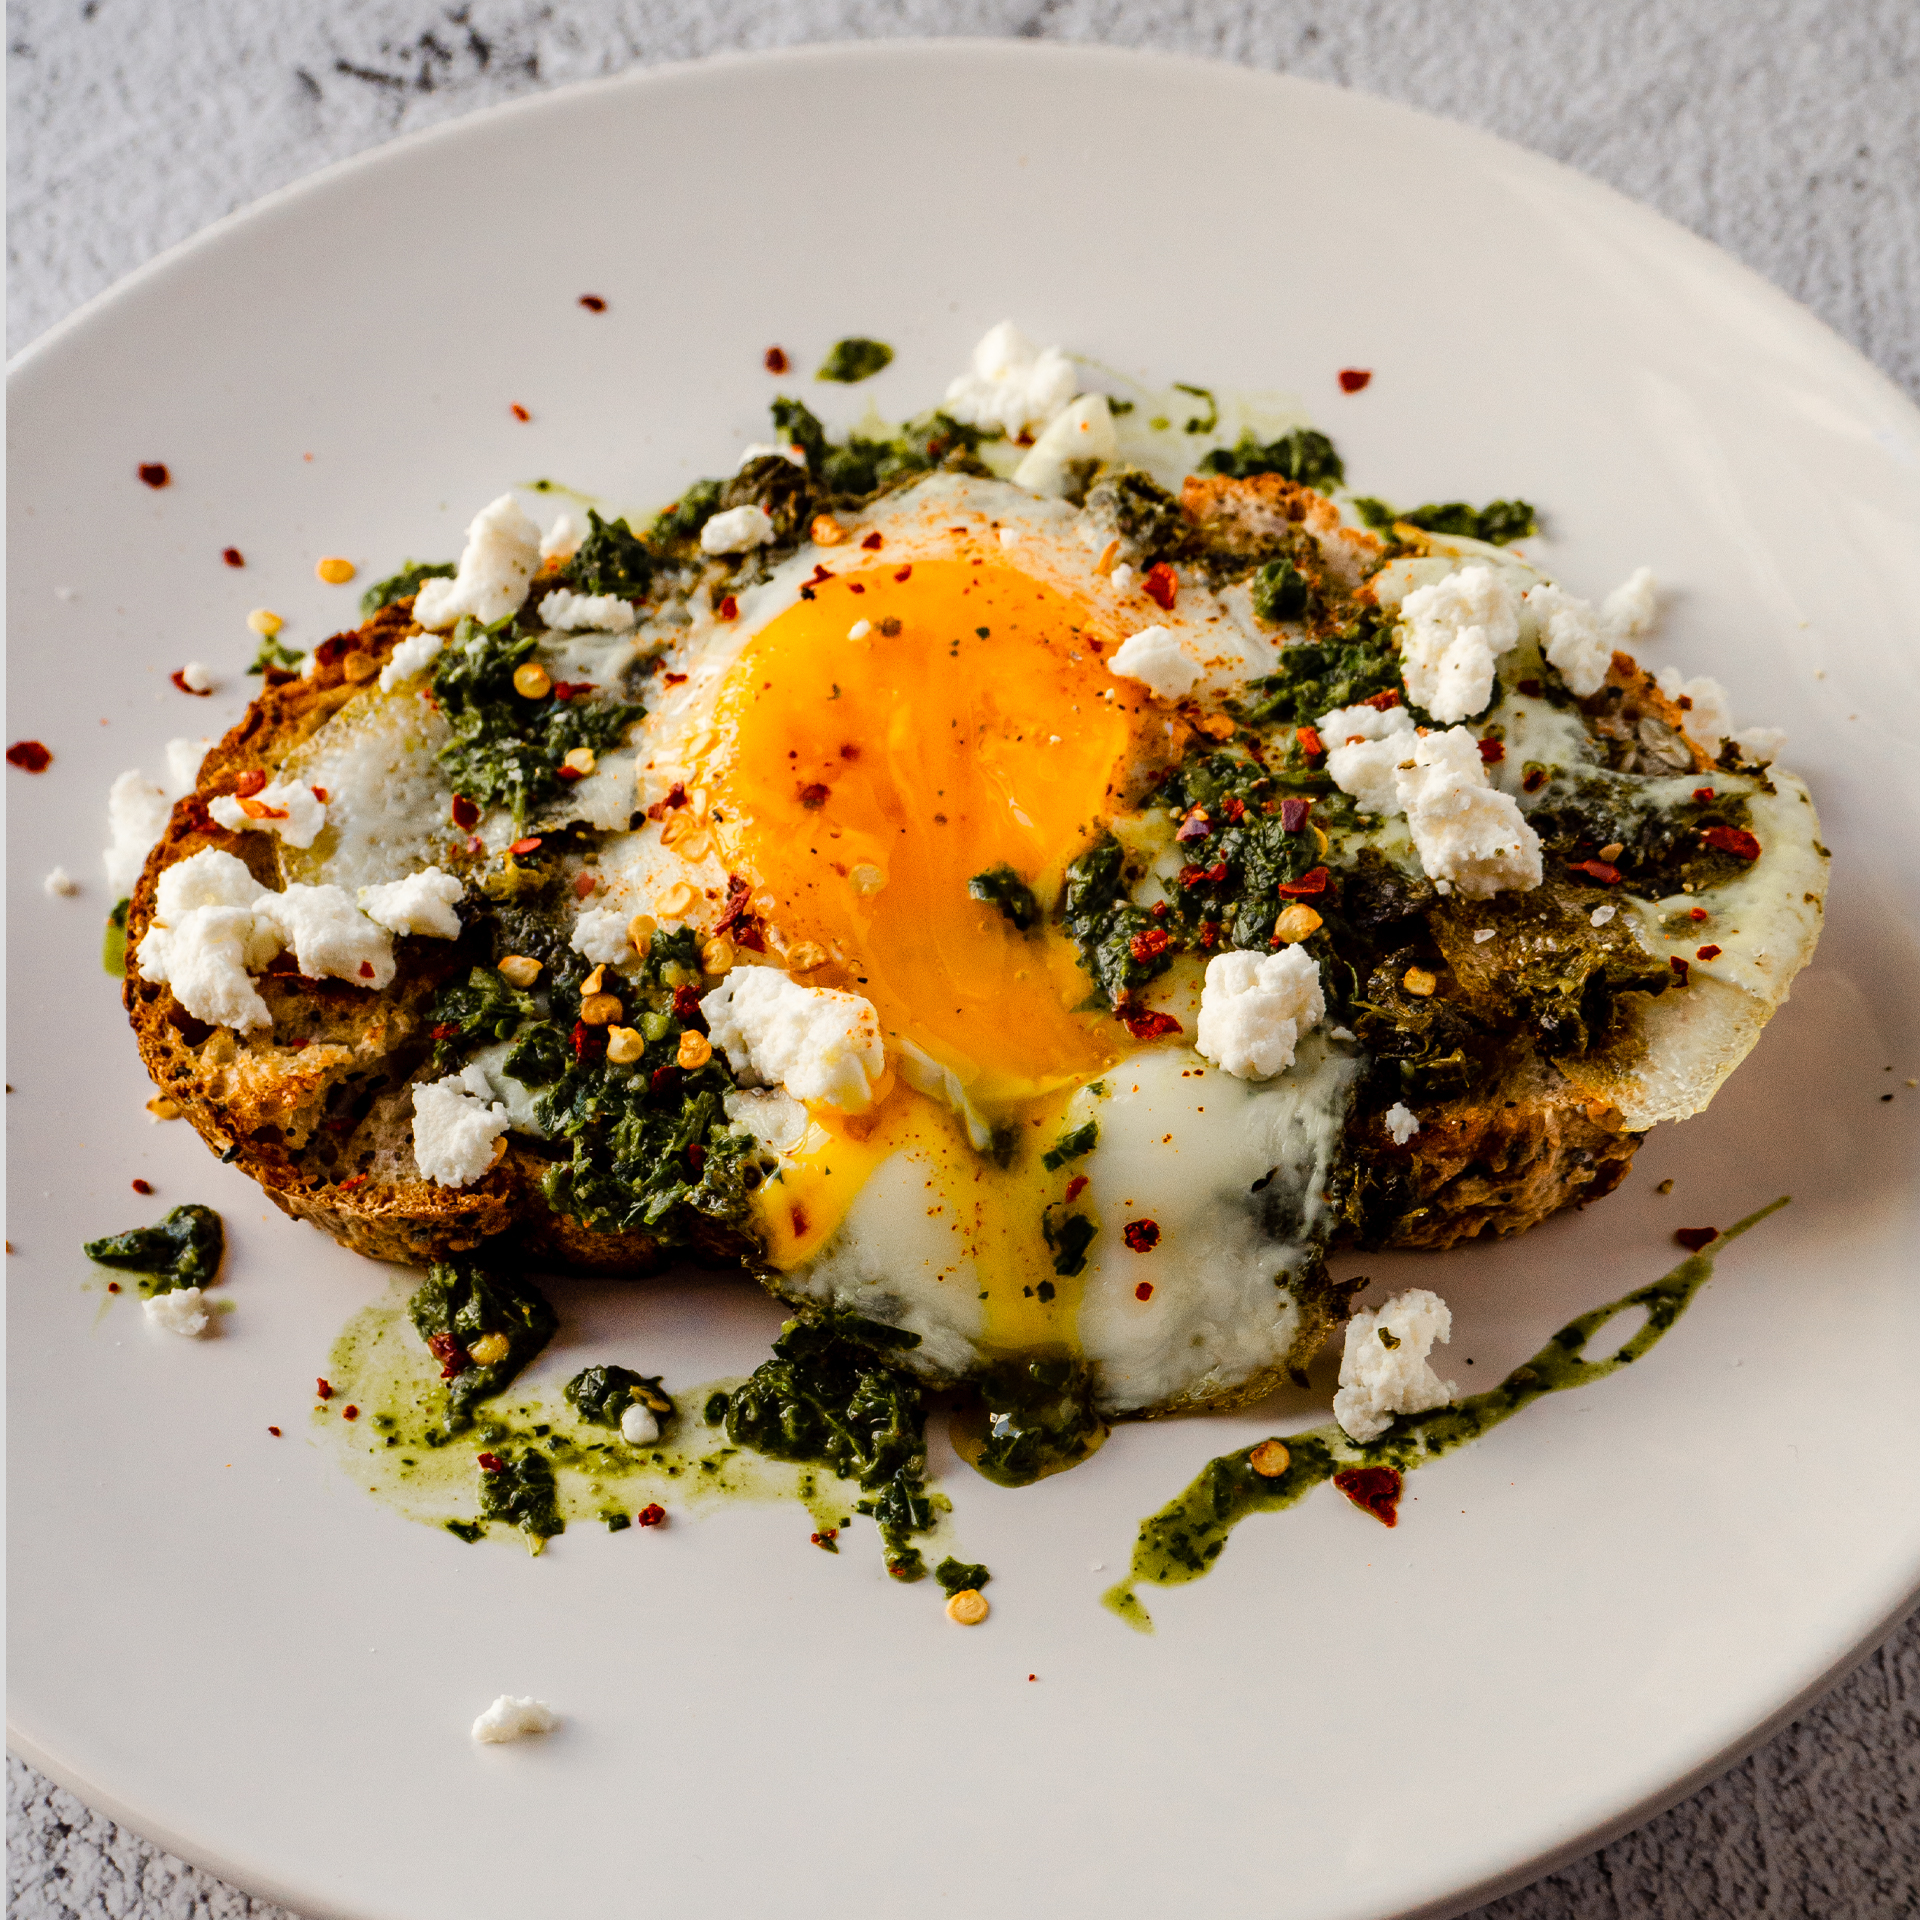 Αυτό το πιάτο θα αλλάξει τη ζωή σου. Αβγά τηγανισμένα σε μυρωδάτη, λεμονάτη σάλτσα μυρωδικών. Έτοιμο σε 15 λεπτά.